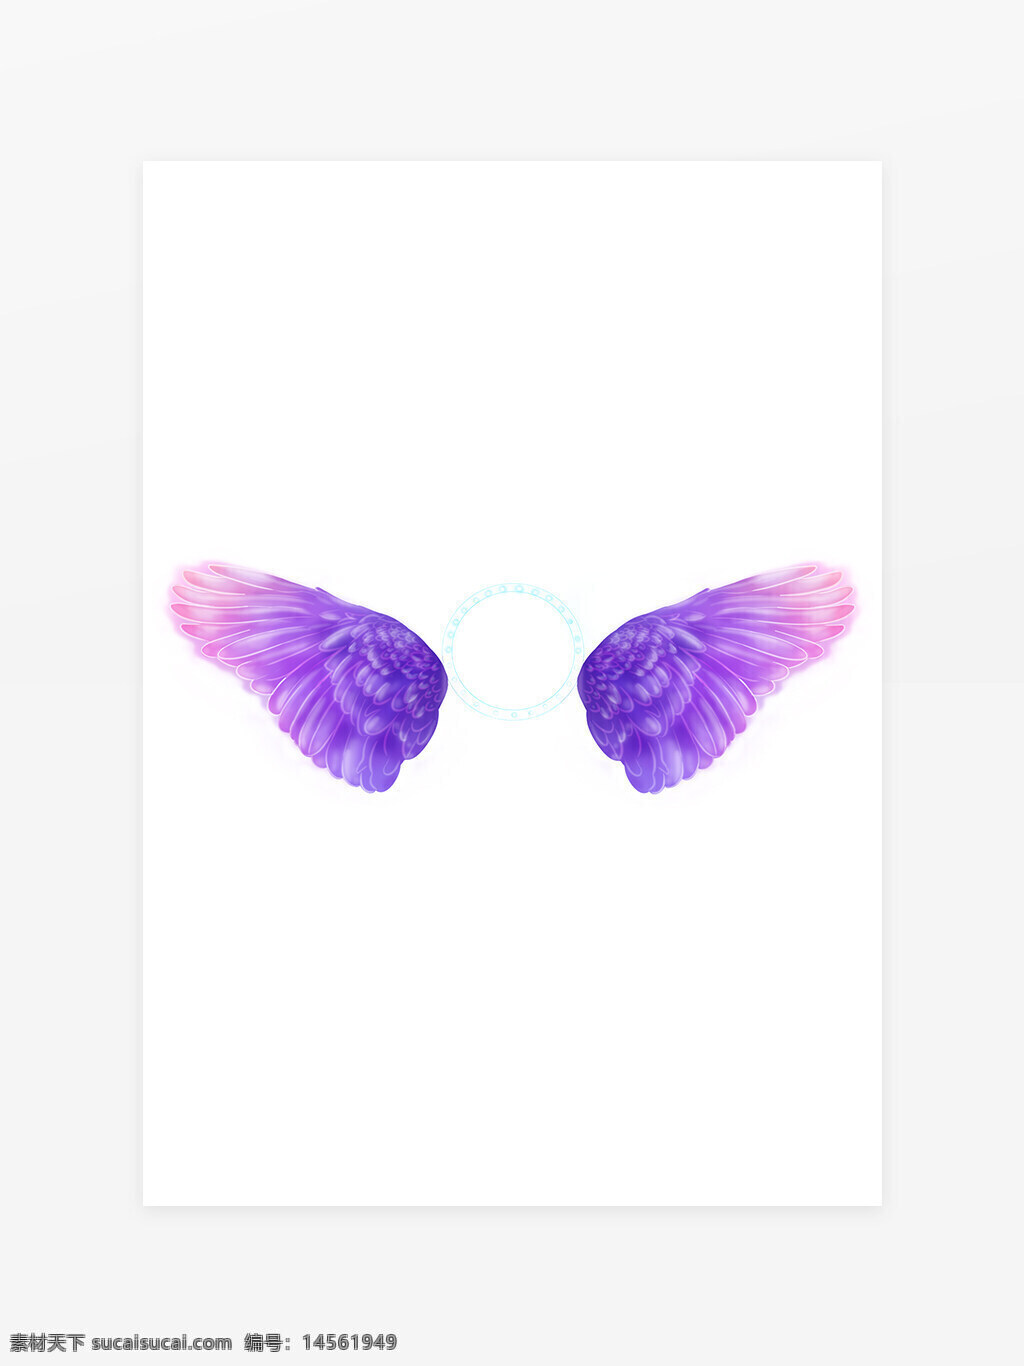 天使翅膀 羽毛 紫色翅膀 羽翼 飞翔